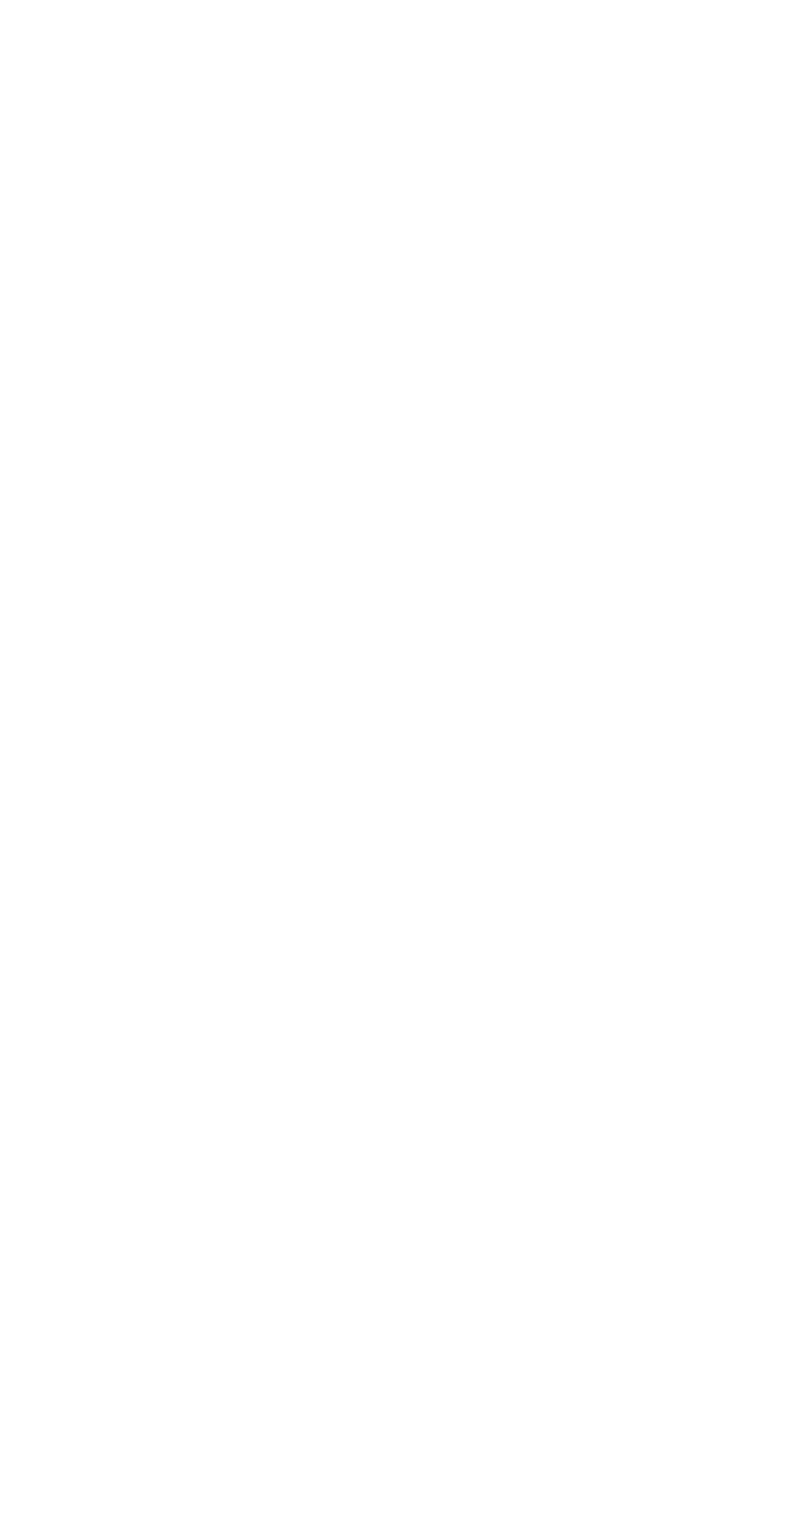 Elevance Health logo for dark backgrounds (transparent PNG)